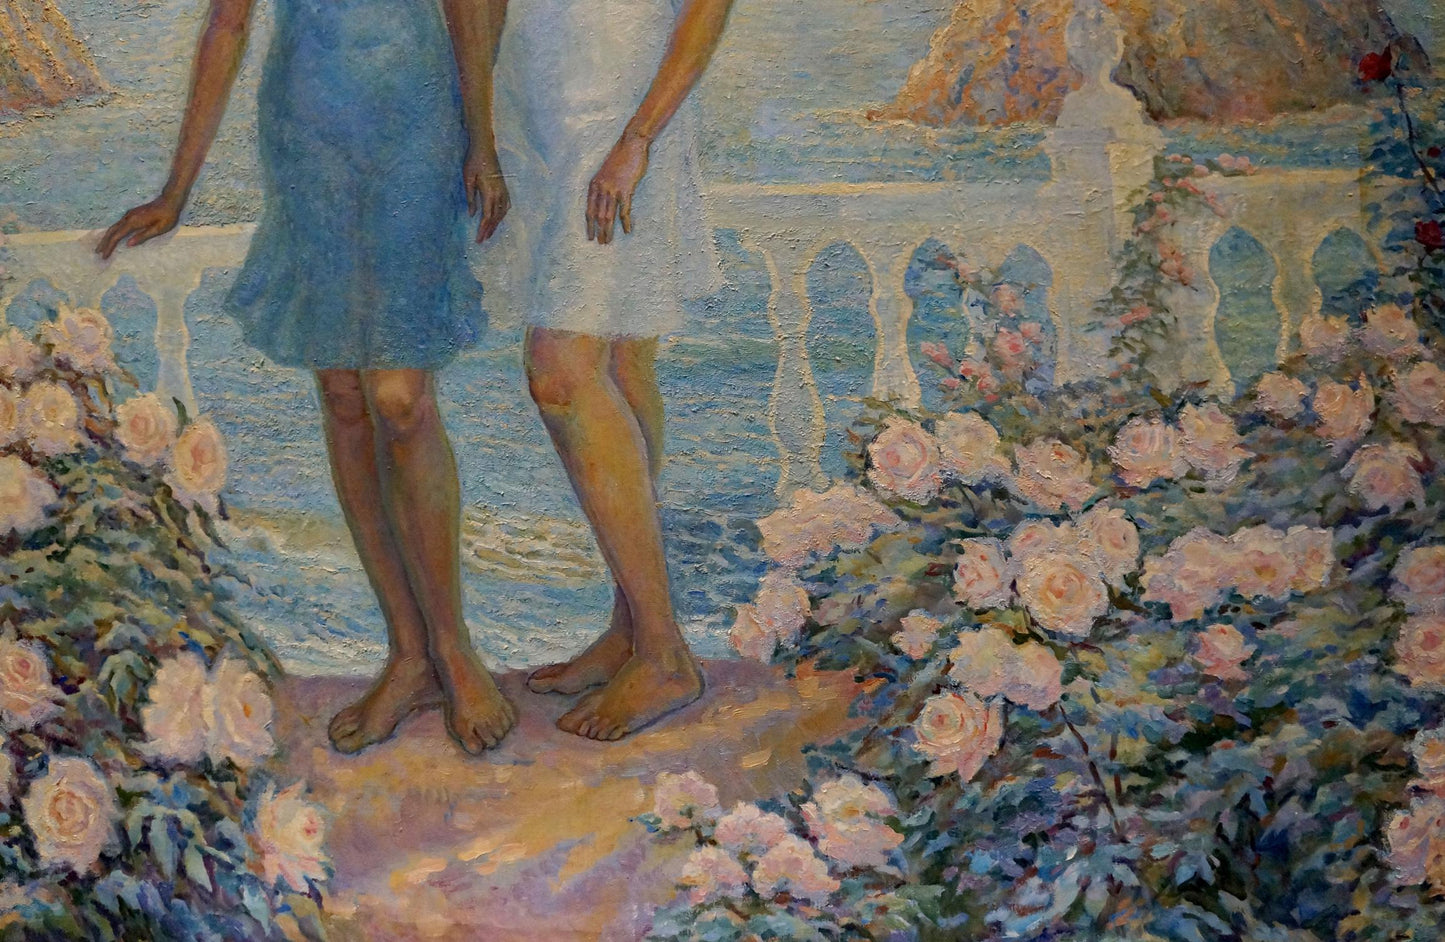 The oil painting by Odarka Anatoliivna Tytarenko captures girls at the seaside